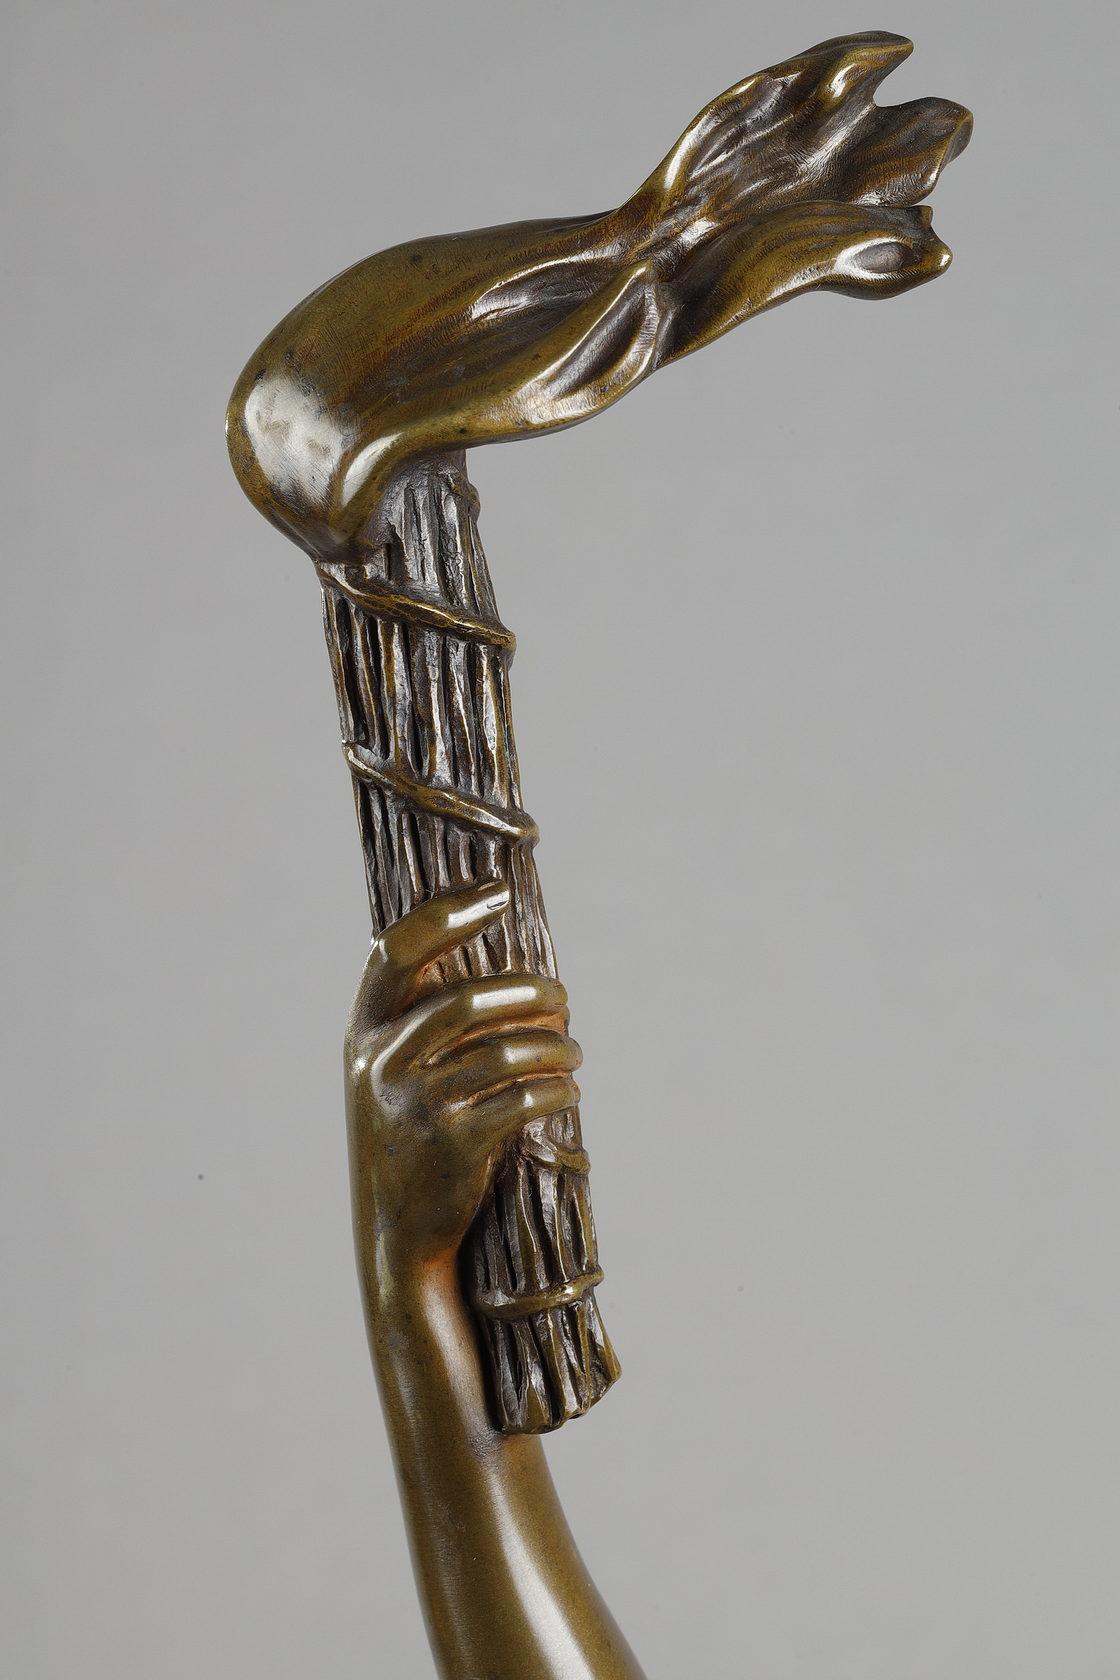 Tänzerin mit Fackeln
von Agathon LÉONARD (1841-1923)

Eine seltene Skulptur aus Bronze mit einer nuancierten hellbraunen Patina
Rückseitig signiert 